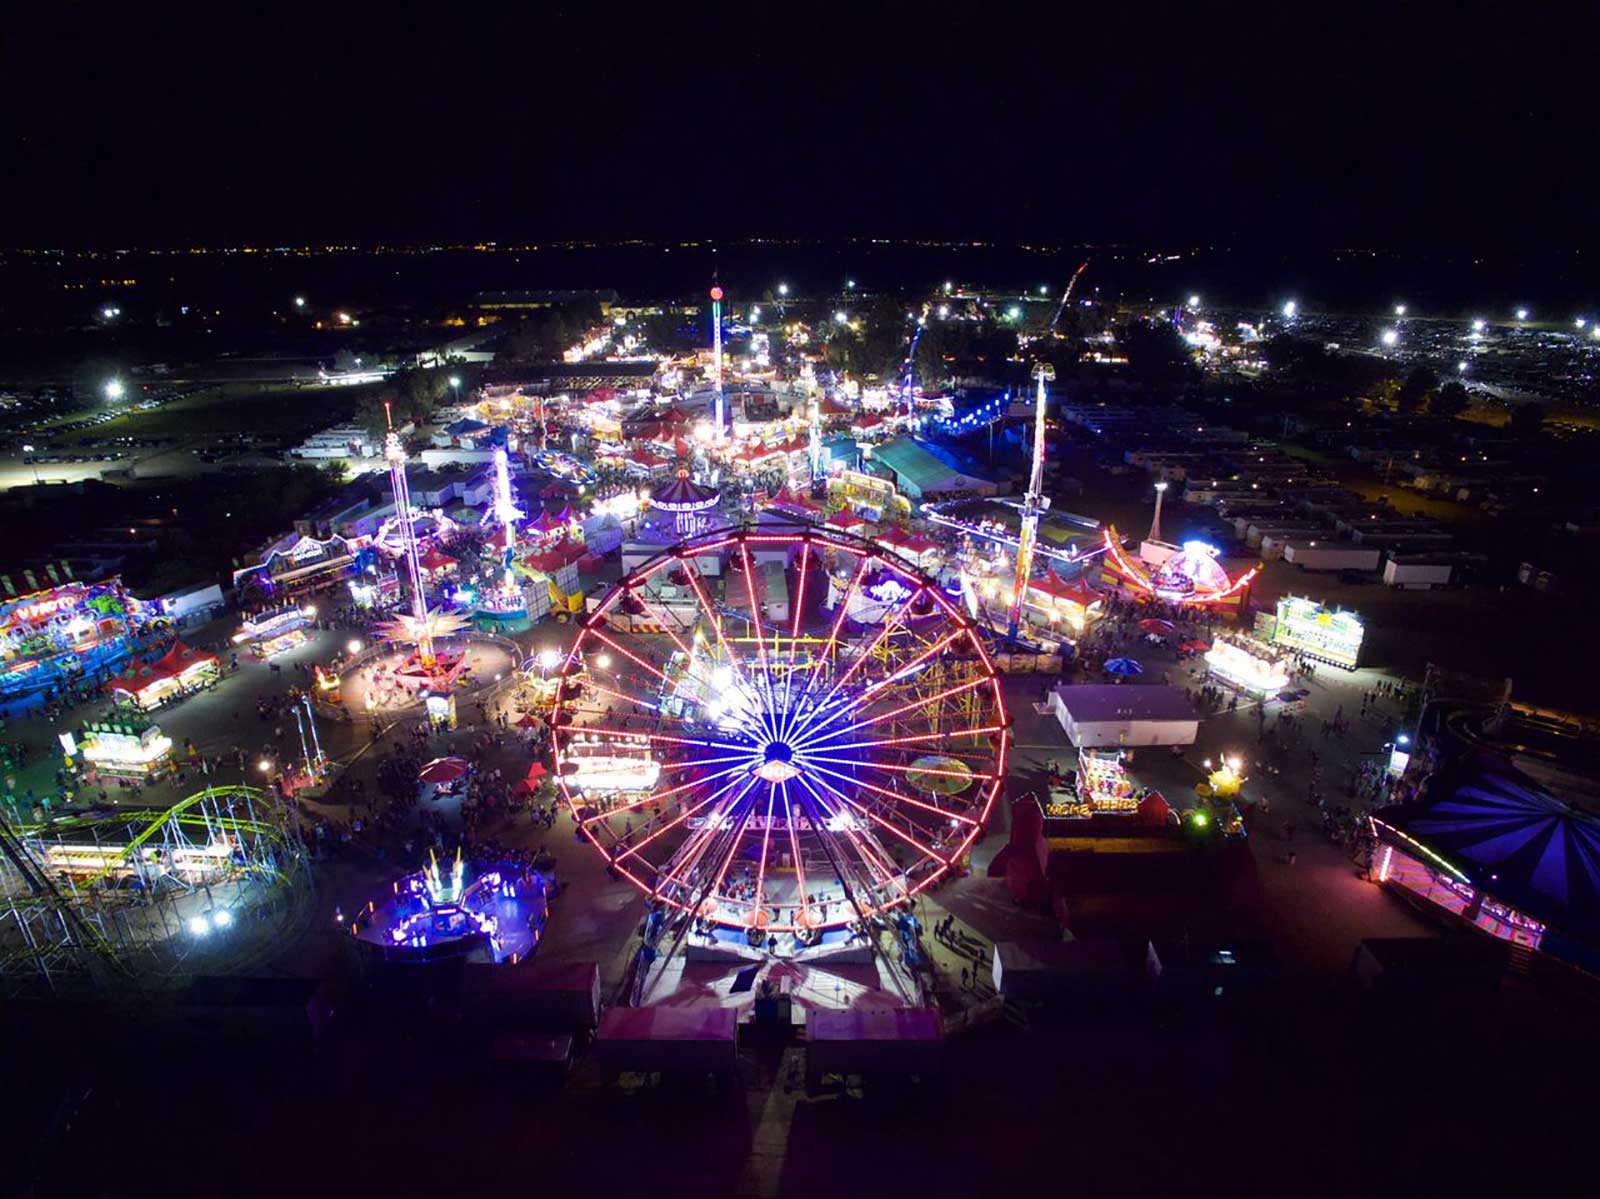 Pima County Fairgrounds